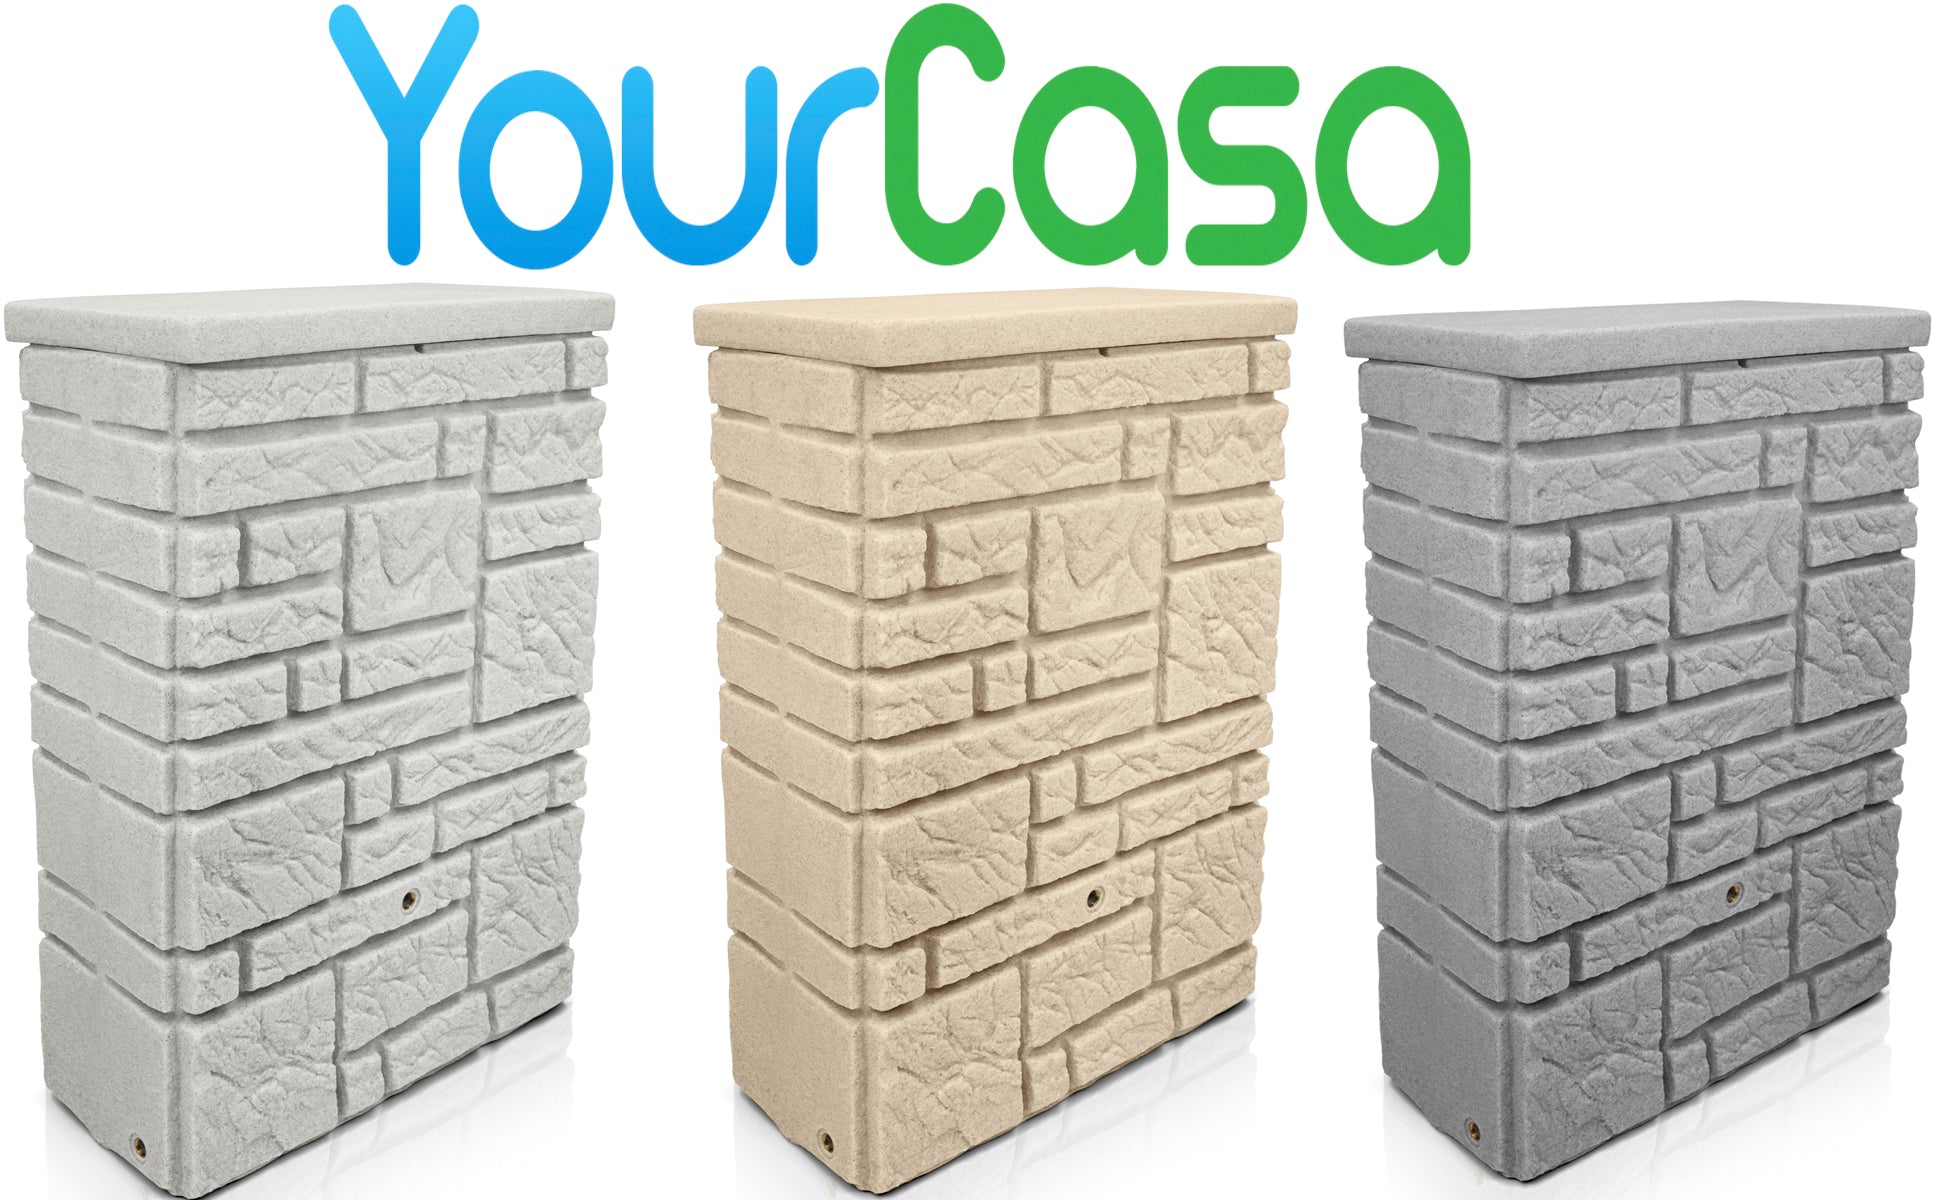 Drei YourCasa Regentonnen 300 Liter [StoneRain] - Frostsicher & UV-beständig mit "yourcasa-de" Logo oben.